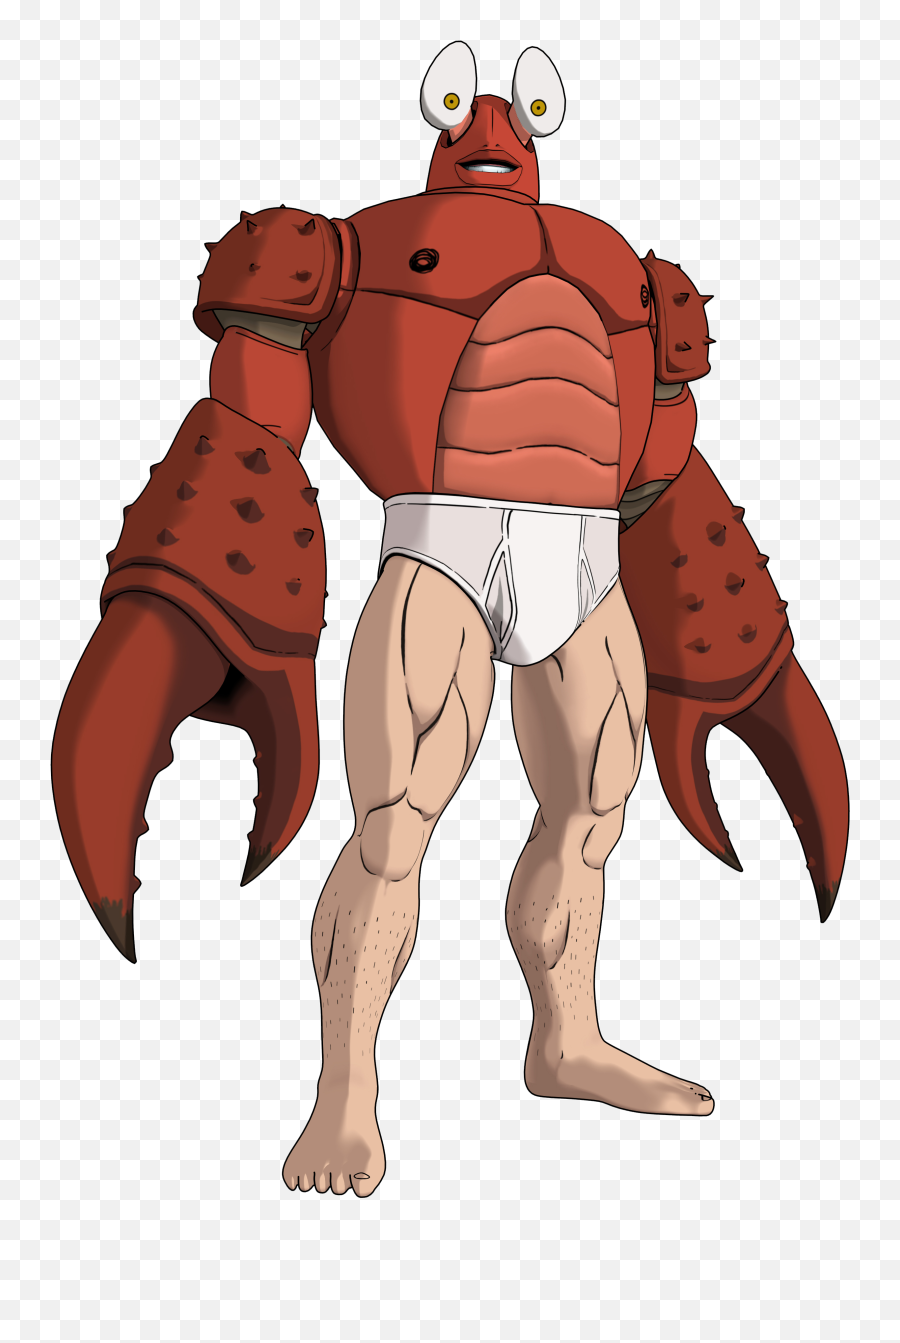 Hero Nobody - One Punch Man King Crab Emoji,Man Punch Punch Man Emoji